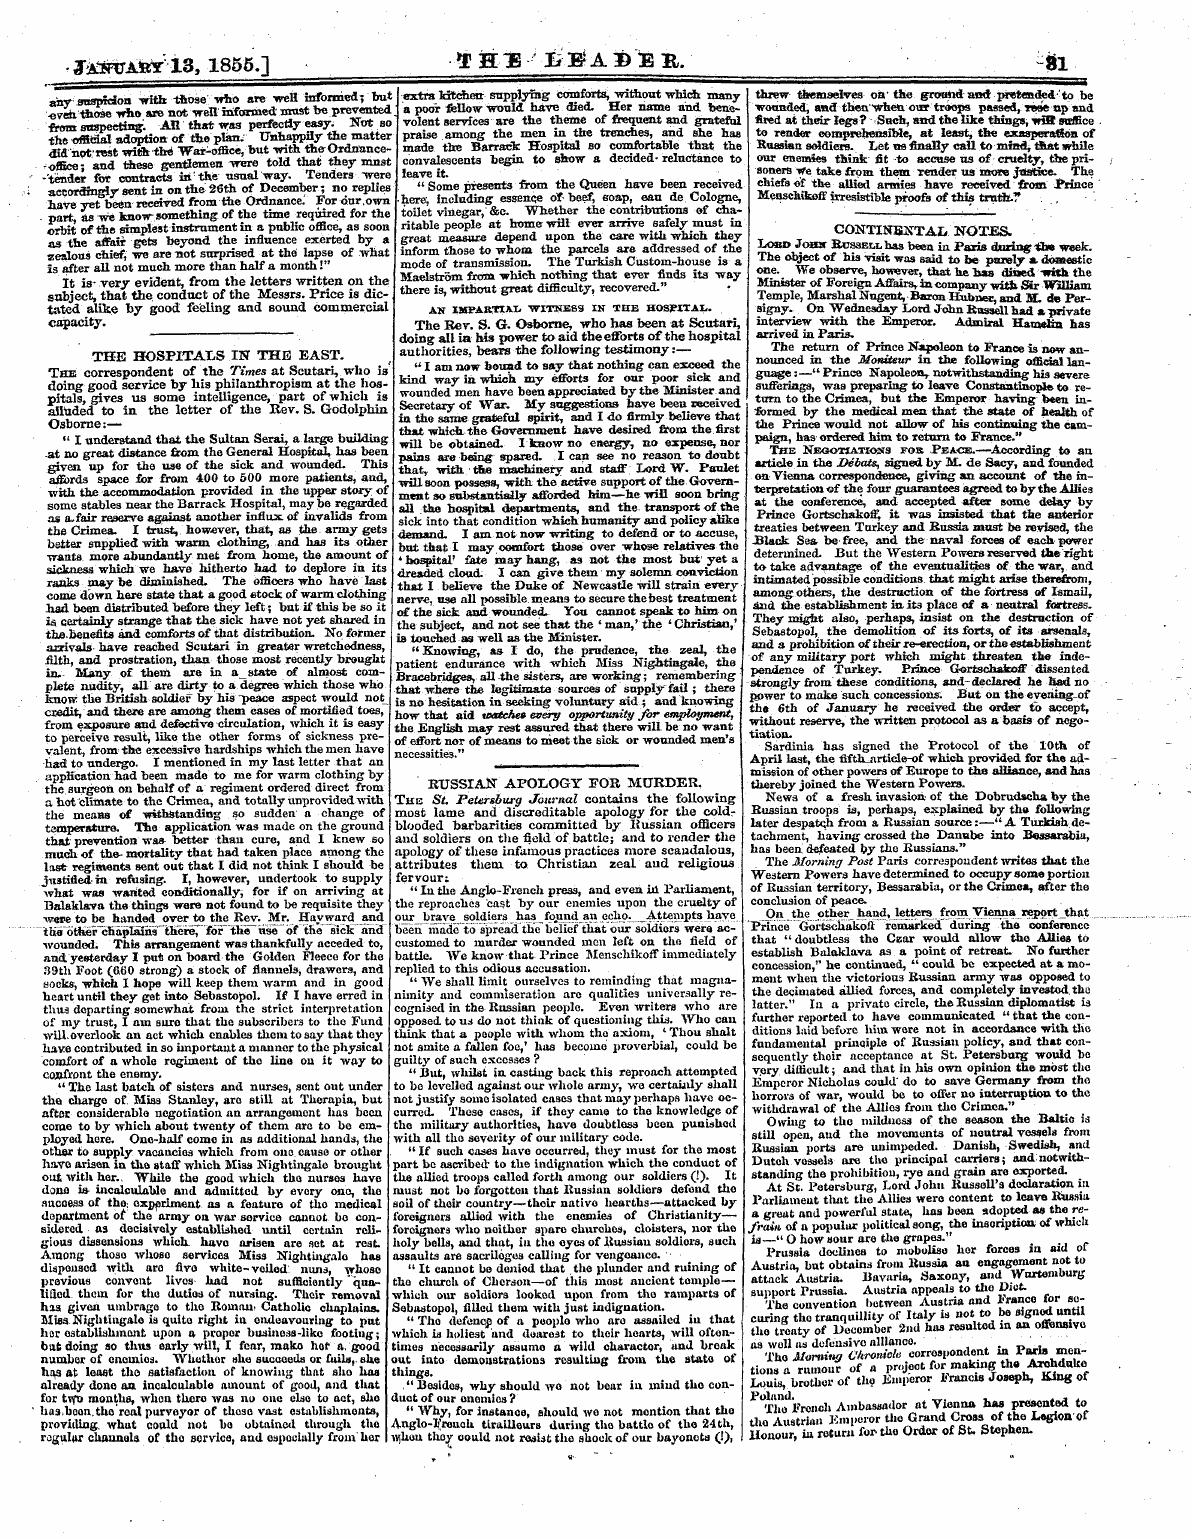 Leader (1850-1860): jS F Y, 2nd edition - . Jxmjax*1s , 1855.] -Jpfeib ^A1)^B, Si